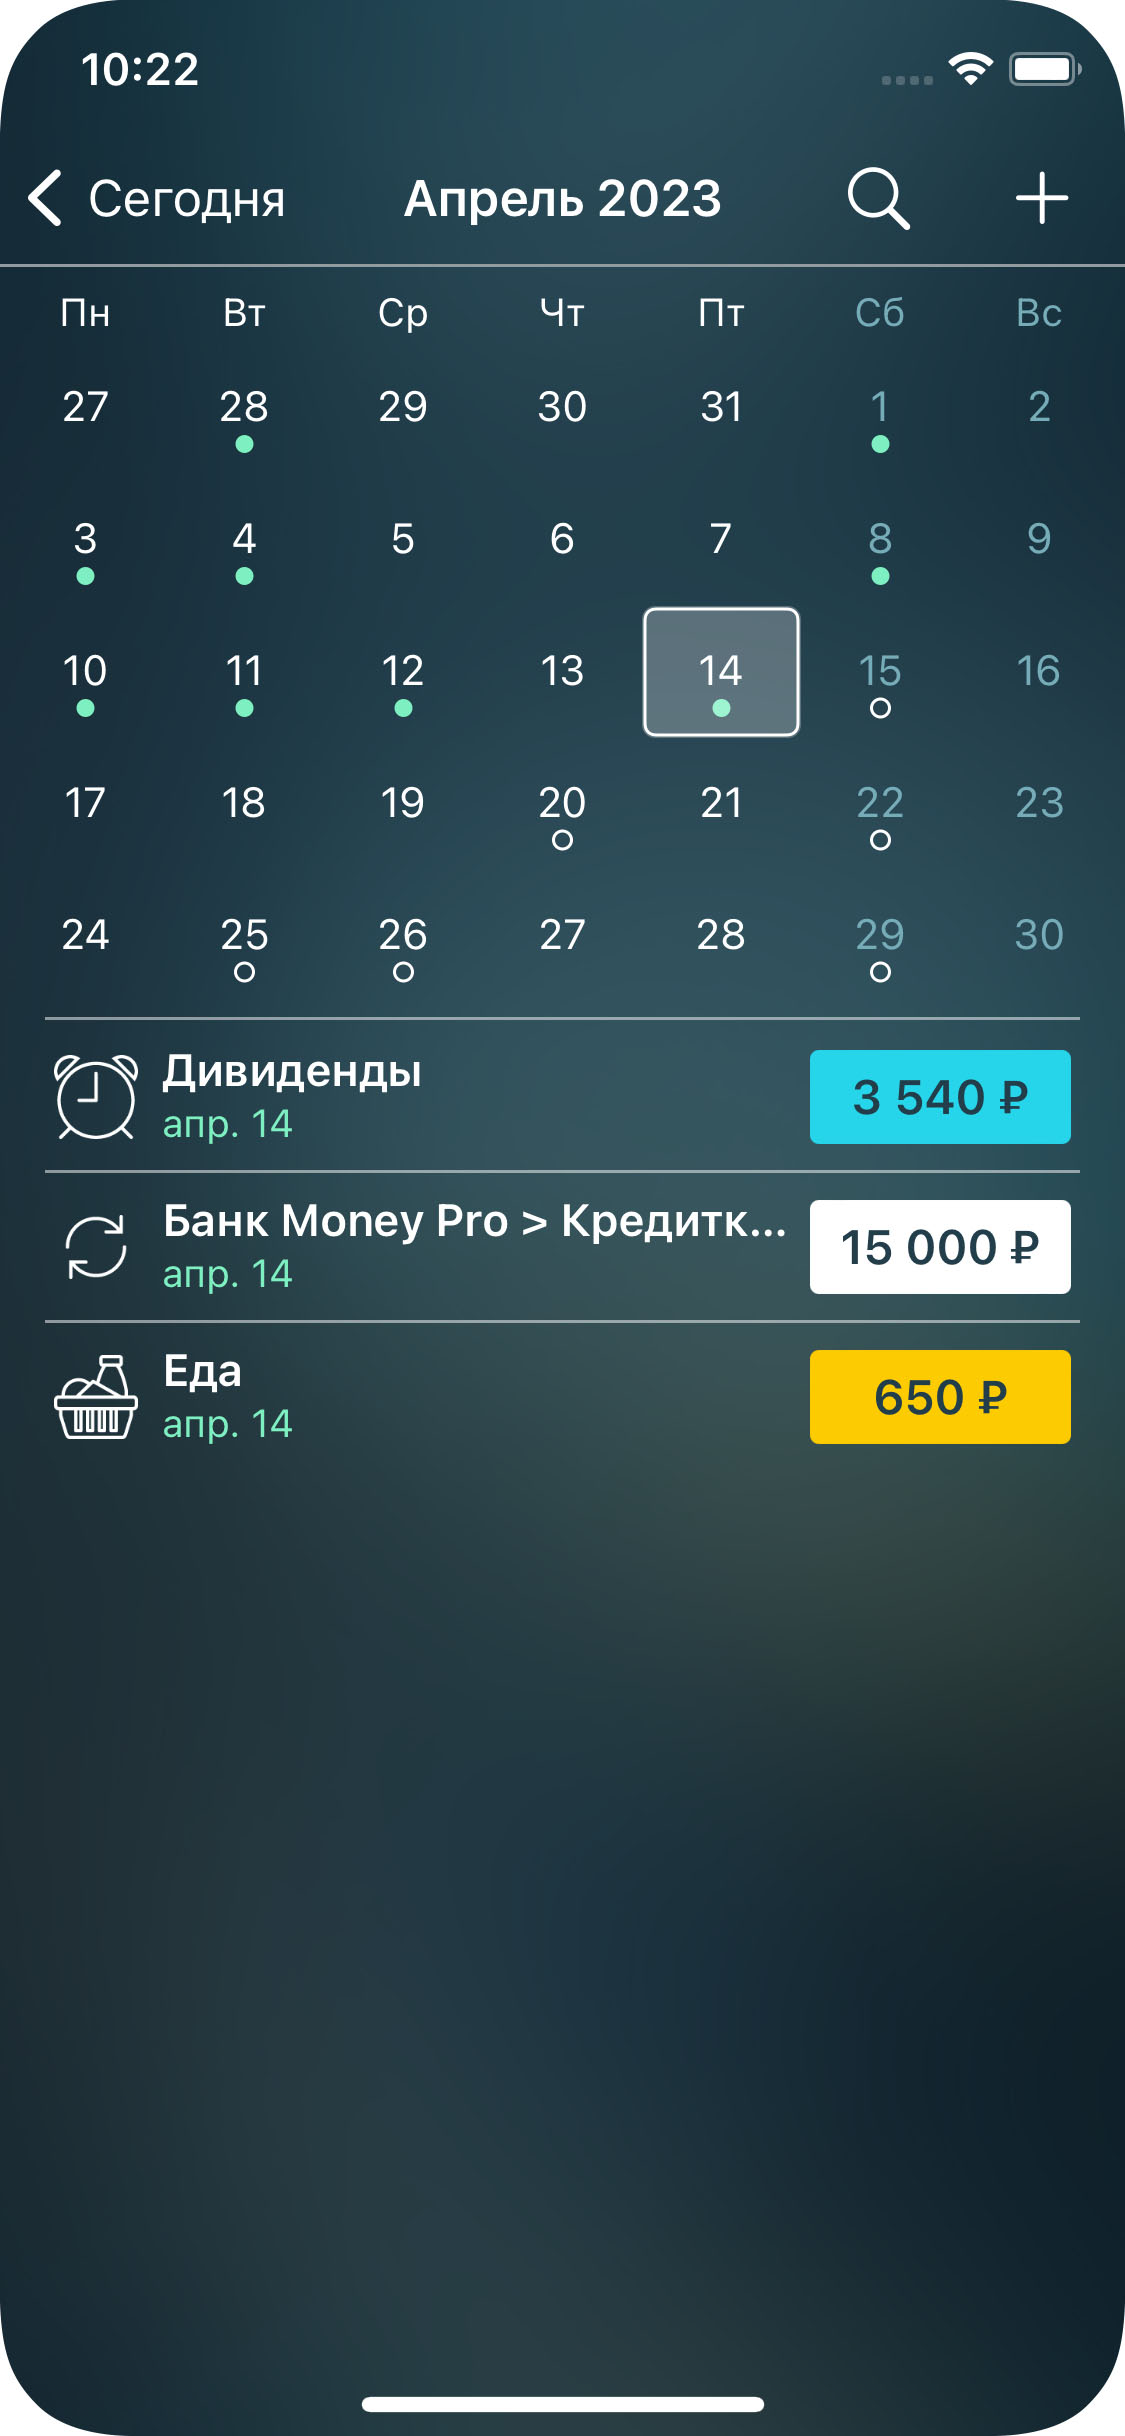 Money Pro - Транзакции - iPhone